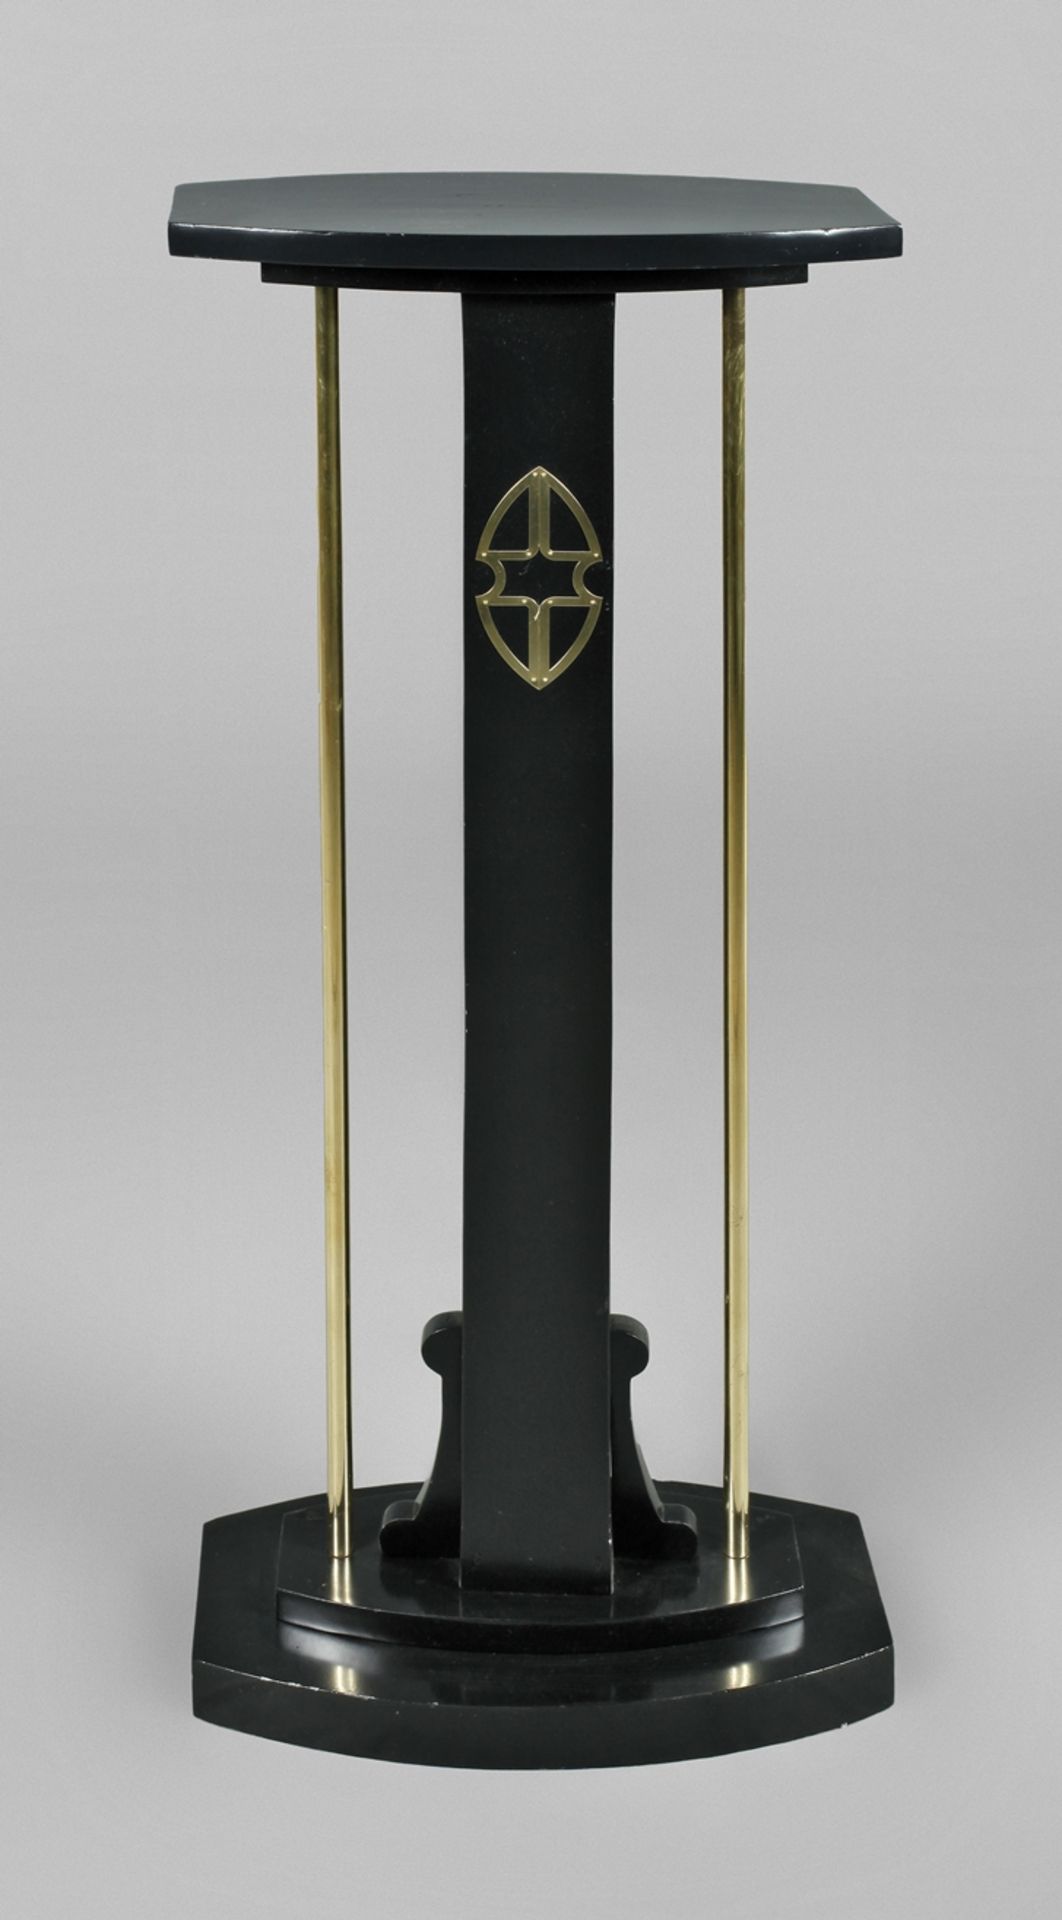 Art Nouveau column pedestal